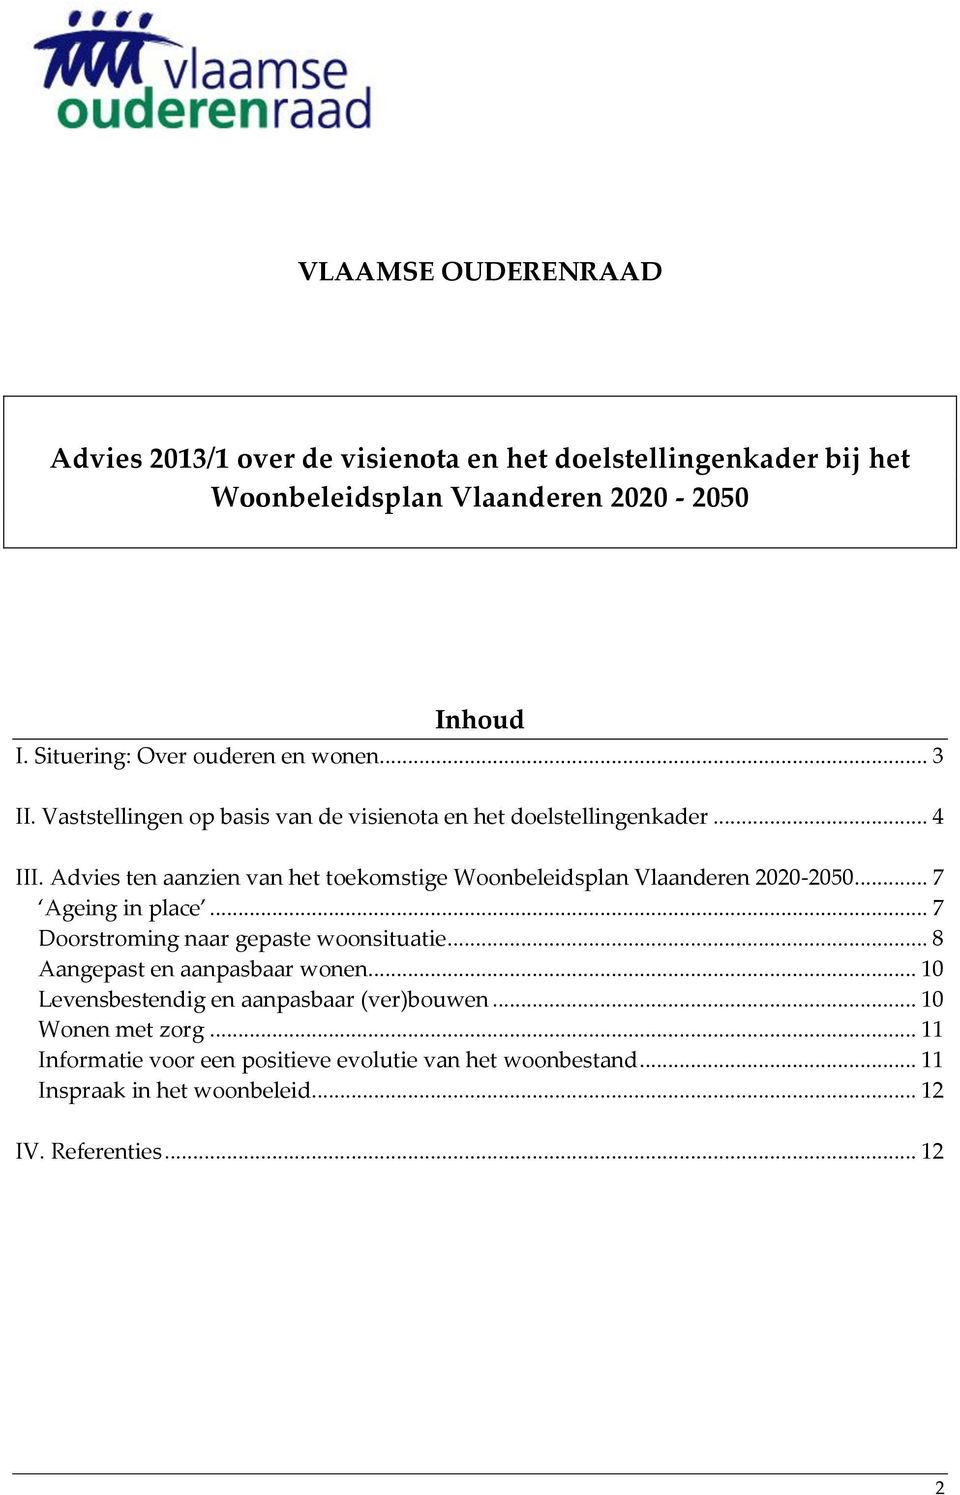 Advies ten aanzien van het toekomstige Woonbeleidsplan Vlaanderen 2020-2050... 7 Ageing in place... 7 Doorstroming naar gepaste woonsituatie.